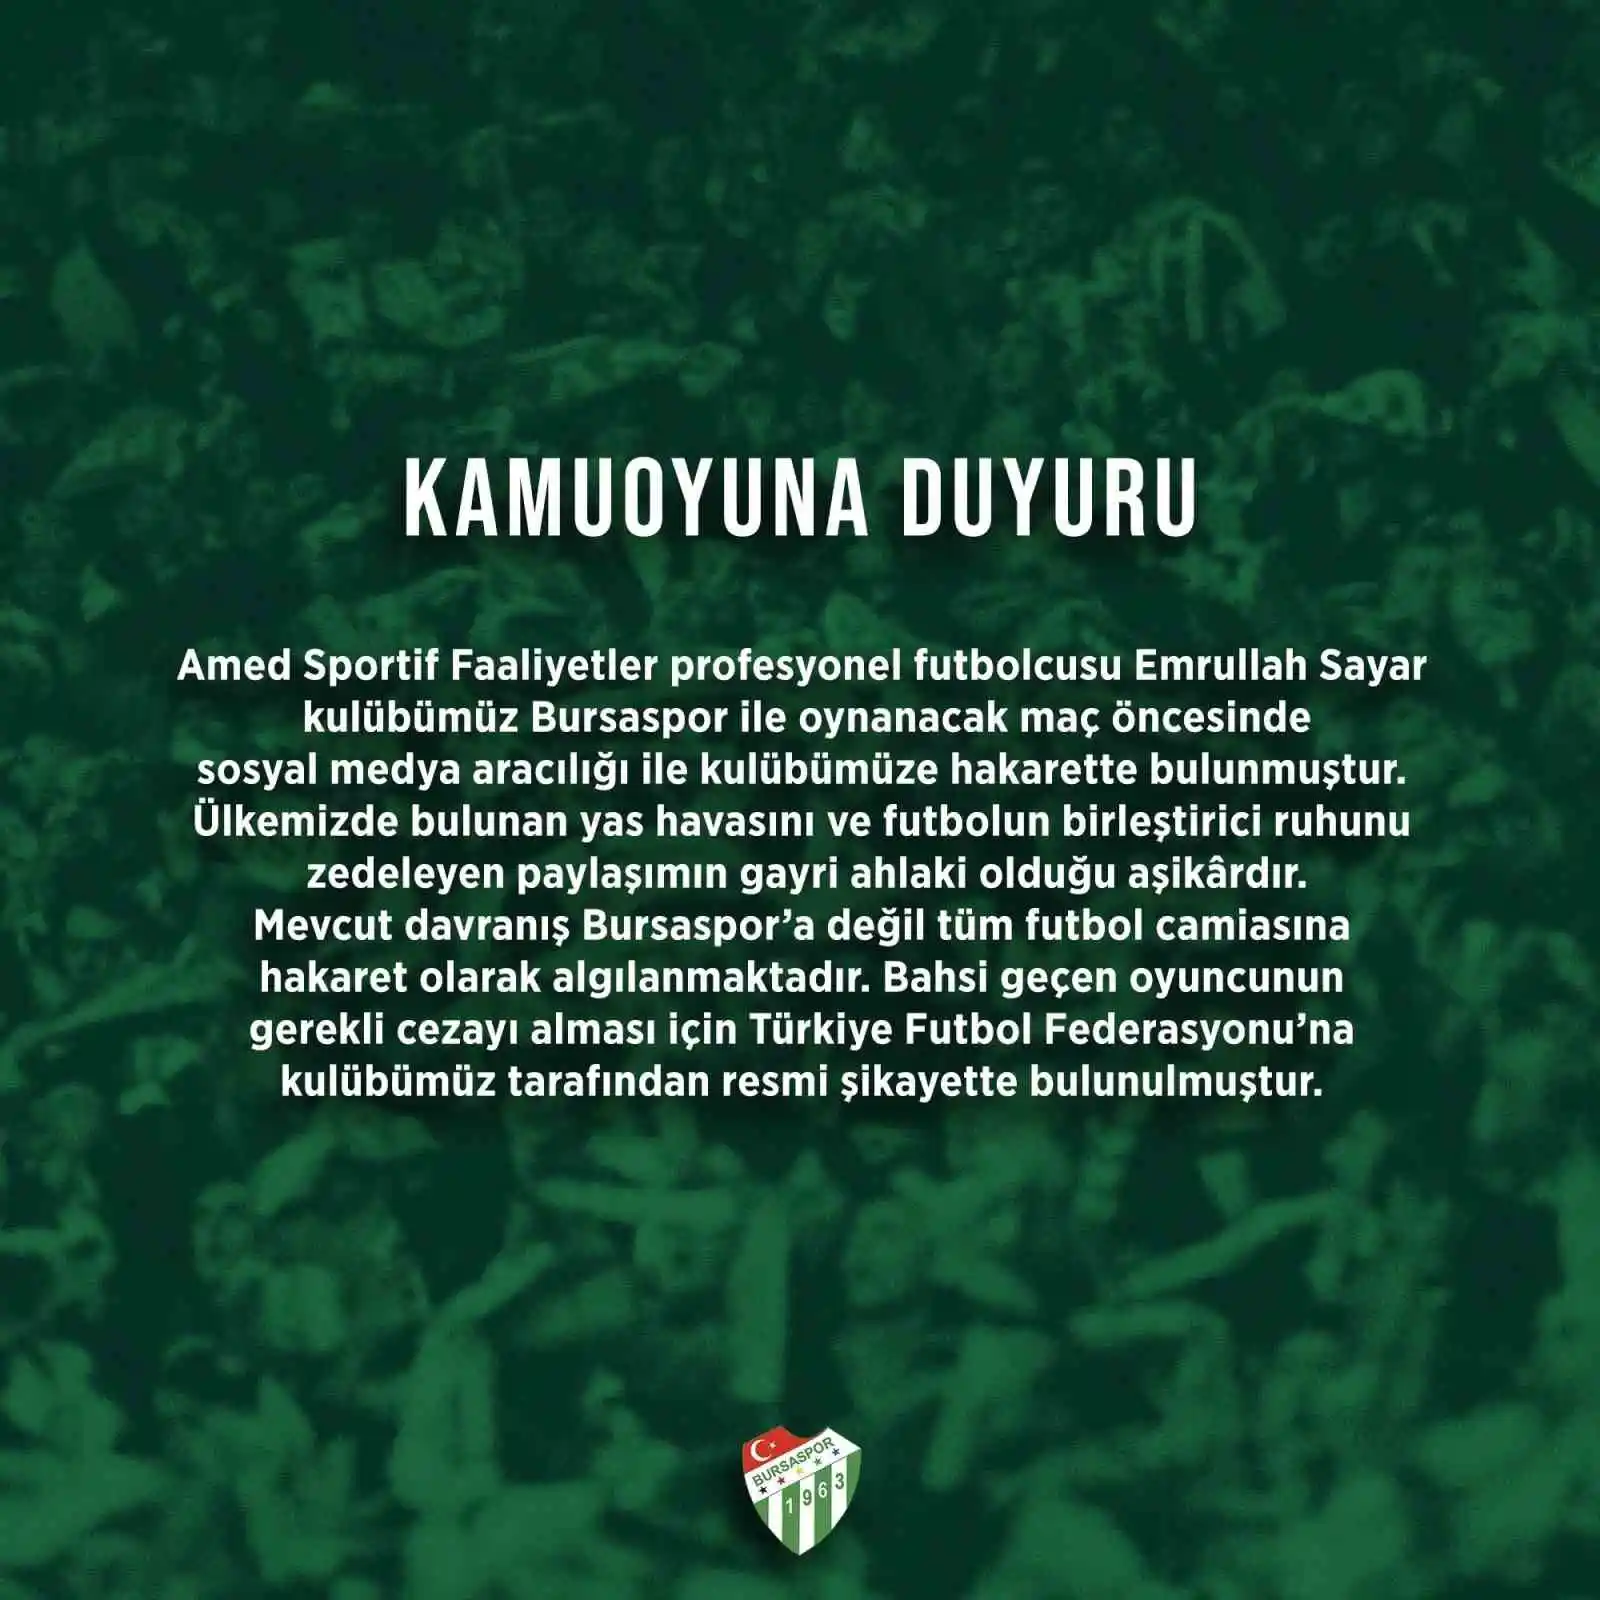 Bursaspor Kulübü, futbolcu Emrullah Sayar'ı şikayet etti
